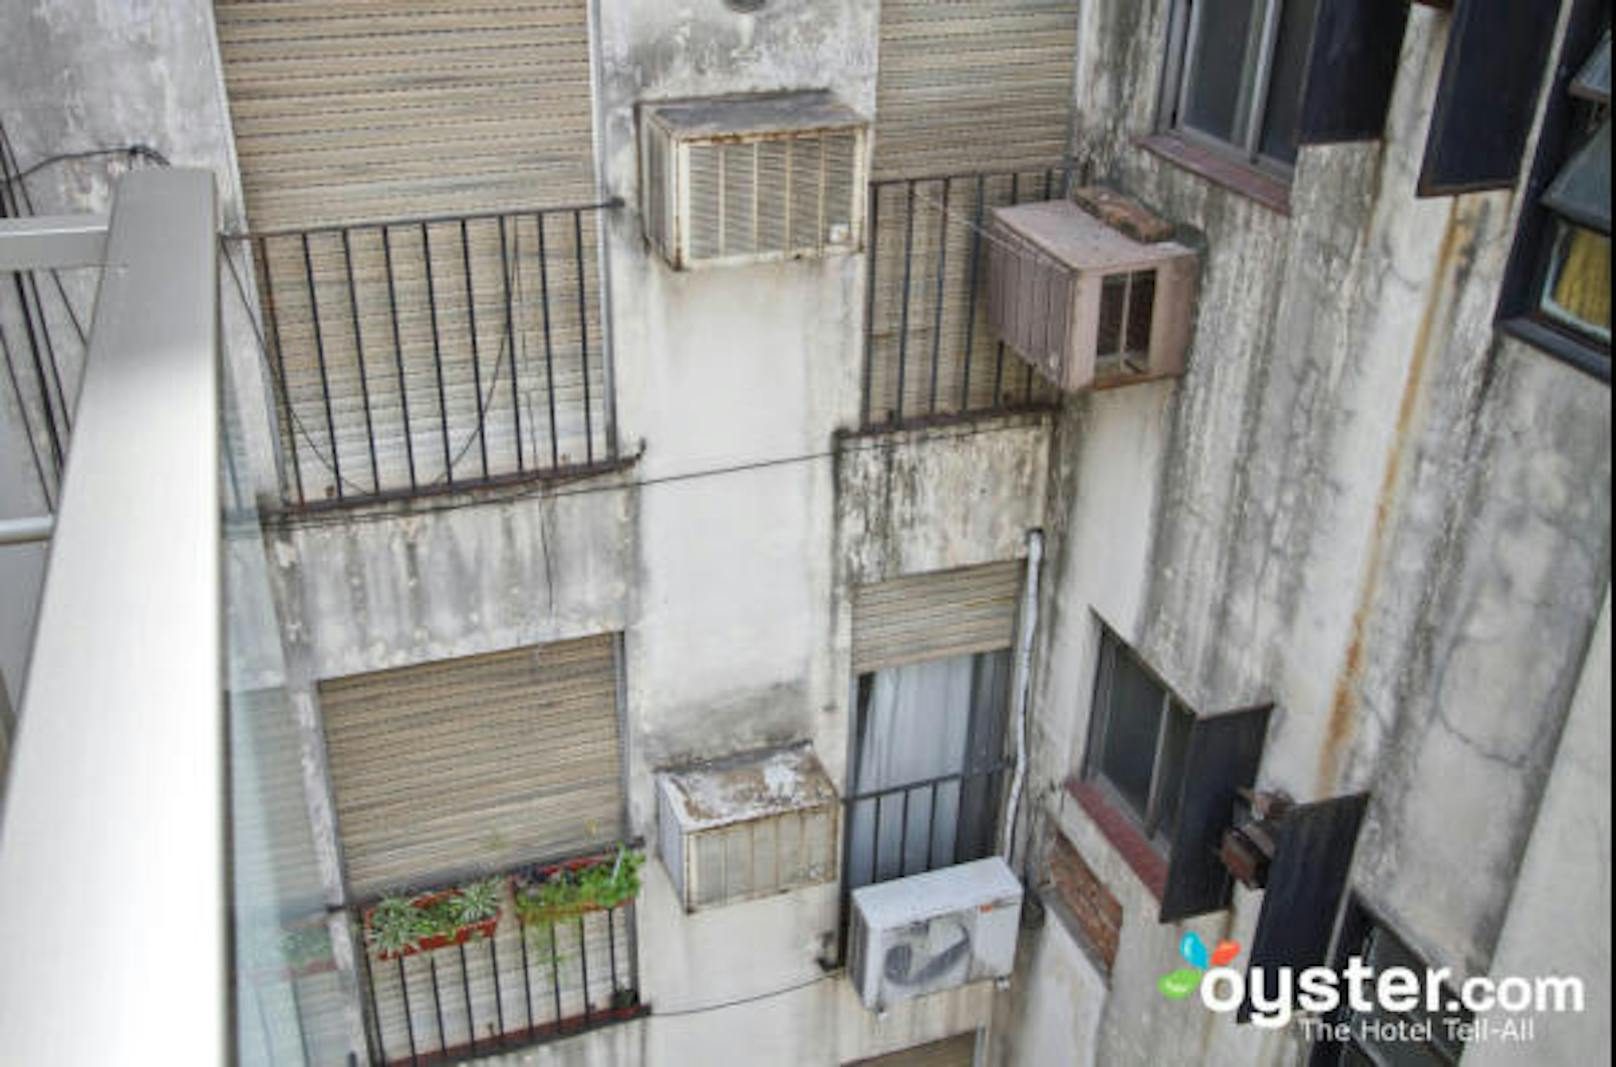 <b>Ayres De Libertad, Buenos Aires, Argentinien: </b>Obwohl alle Zimmer dieses modernen Hotels vom Boden bis zur Decke reichende Fenster haben, blickt die Hälfte auf einen heruntergekommenen Innenhof.